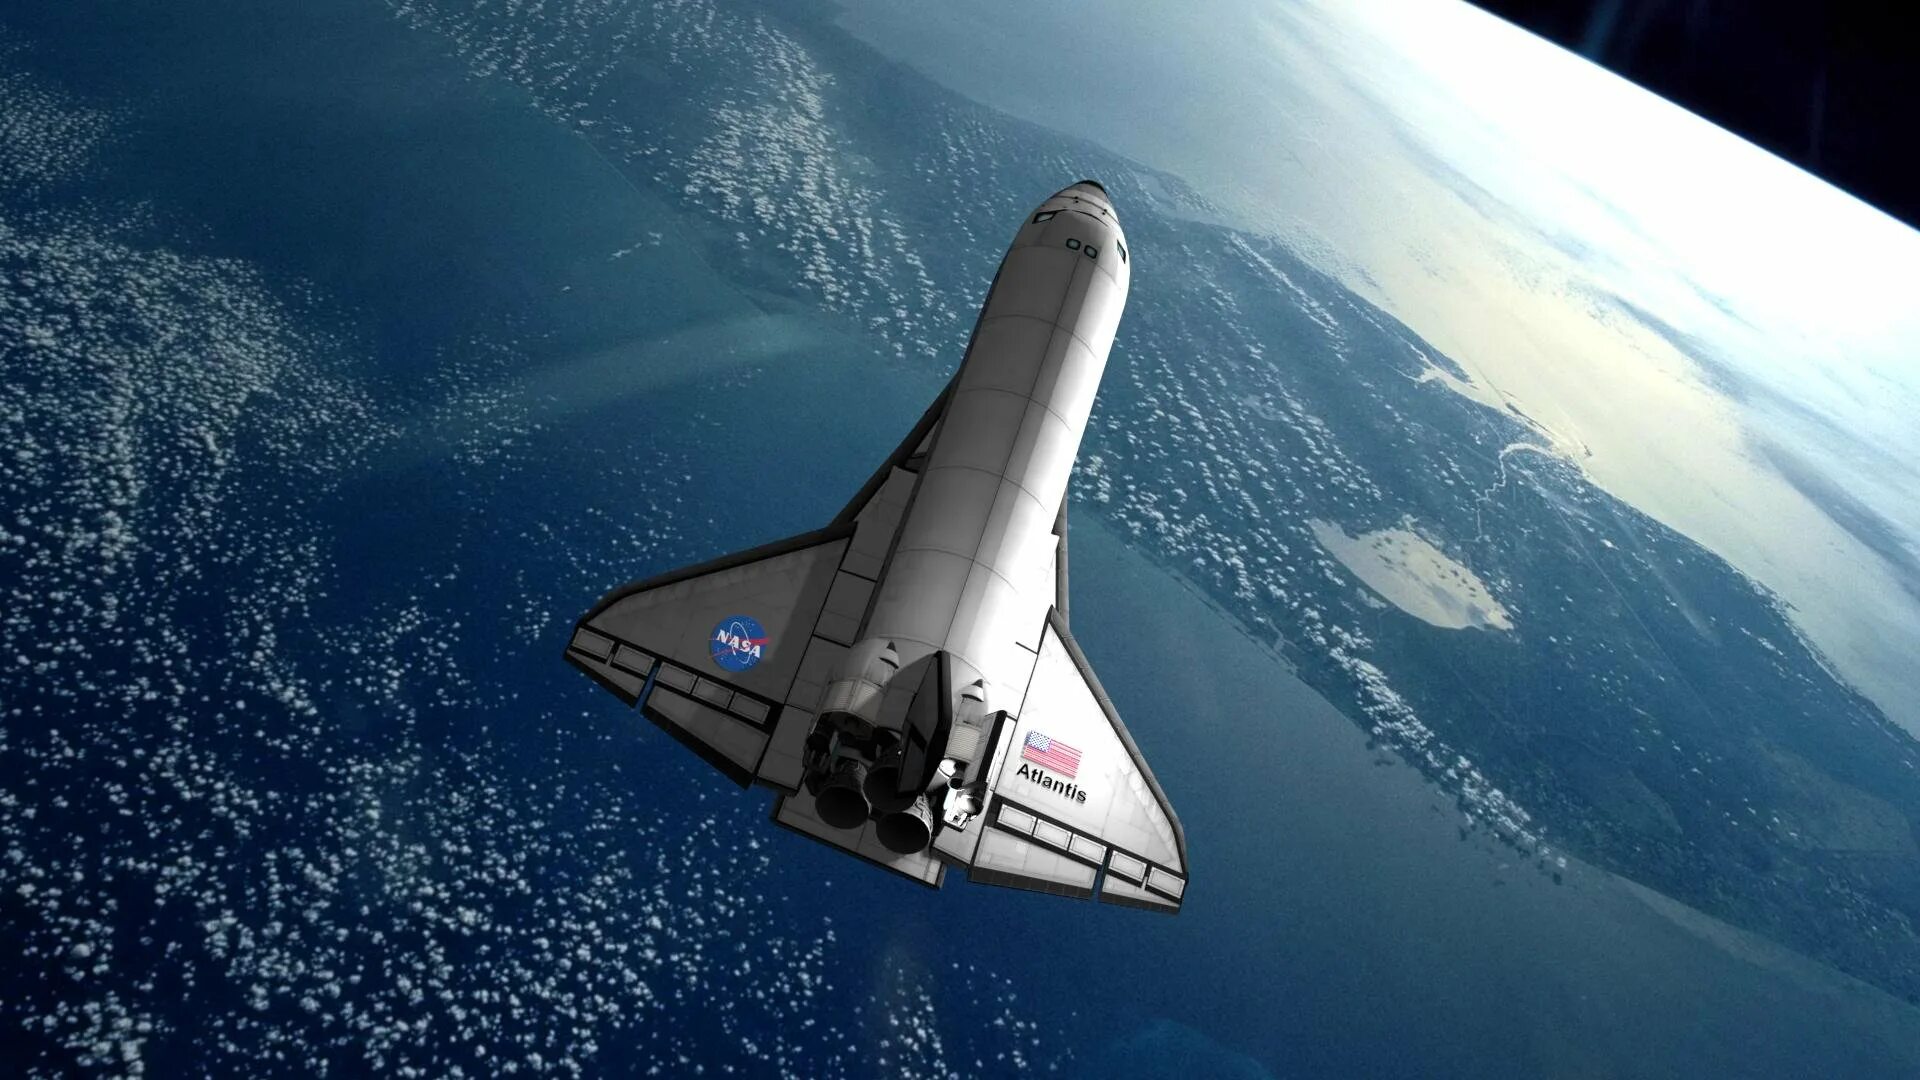 Первый космический челнок. Спейс шаттл космический корабль. Космический челнок Спейс шаттл. Космоплан Спейс шаттл. : Космический челнок Space Shuttle.